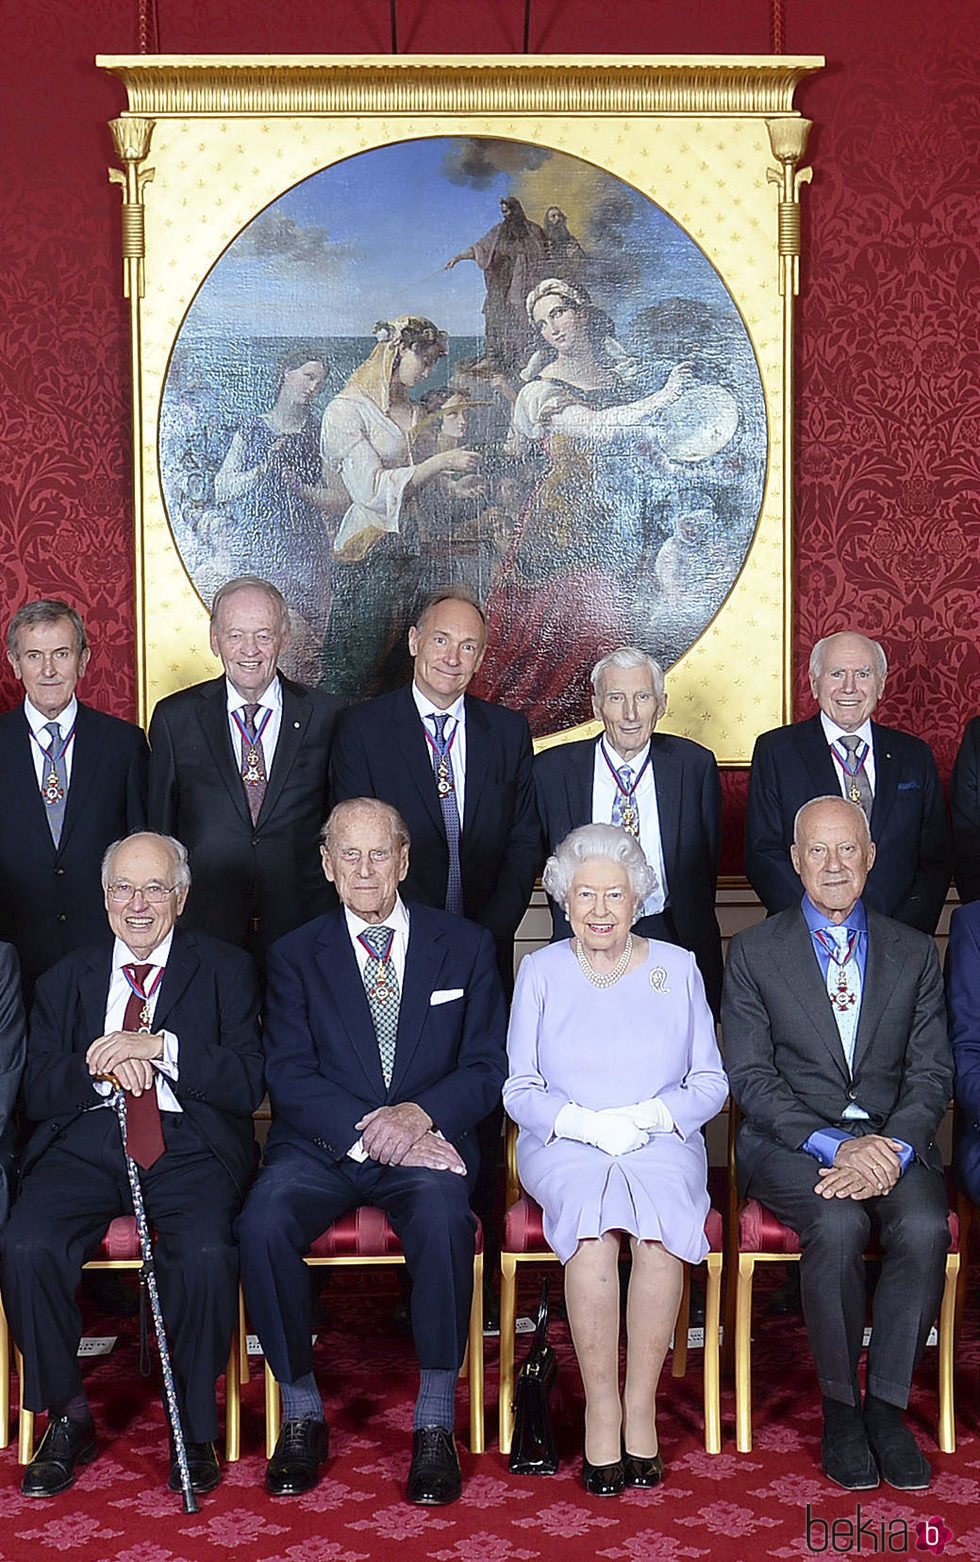 El Duque de Edimburgo posa con la Reina Isabel y los miembros de la Orden del Mérito tras anunciar que se jubila